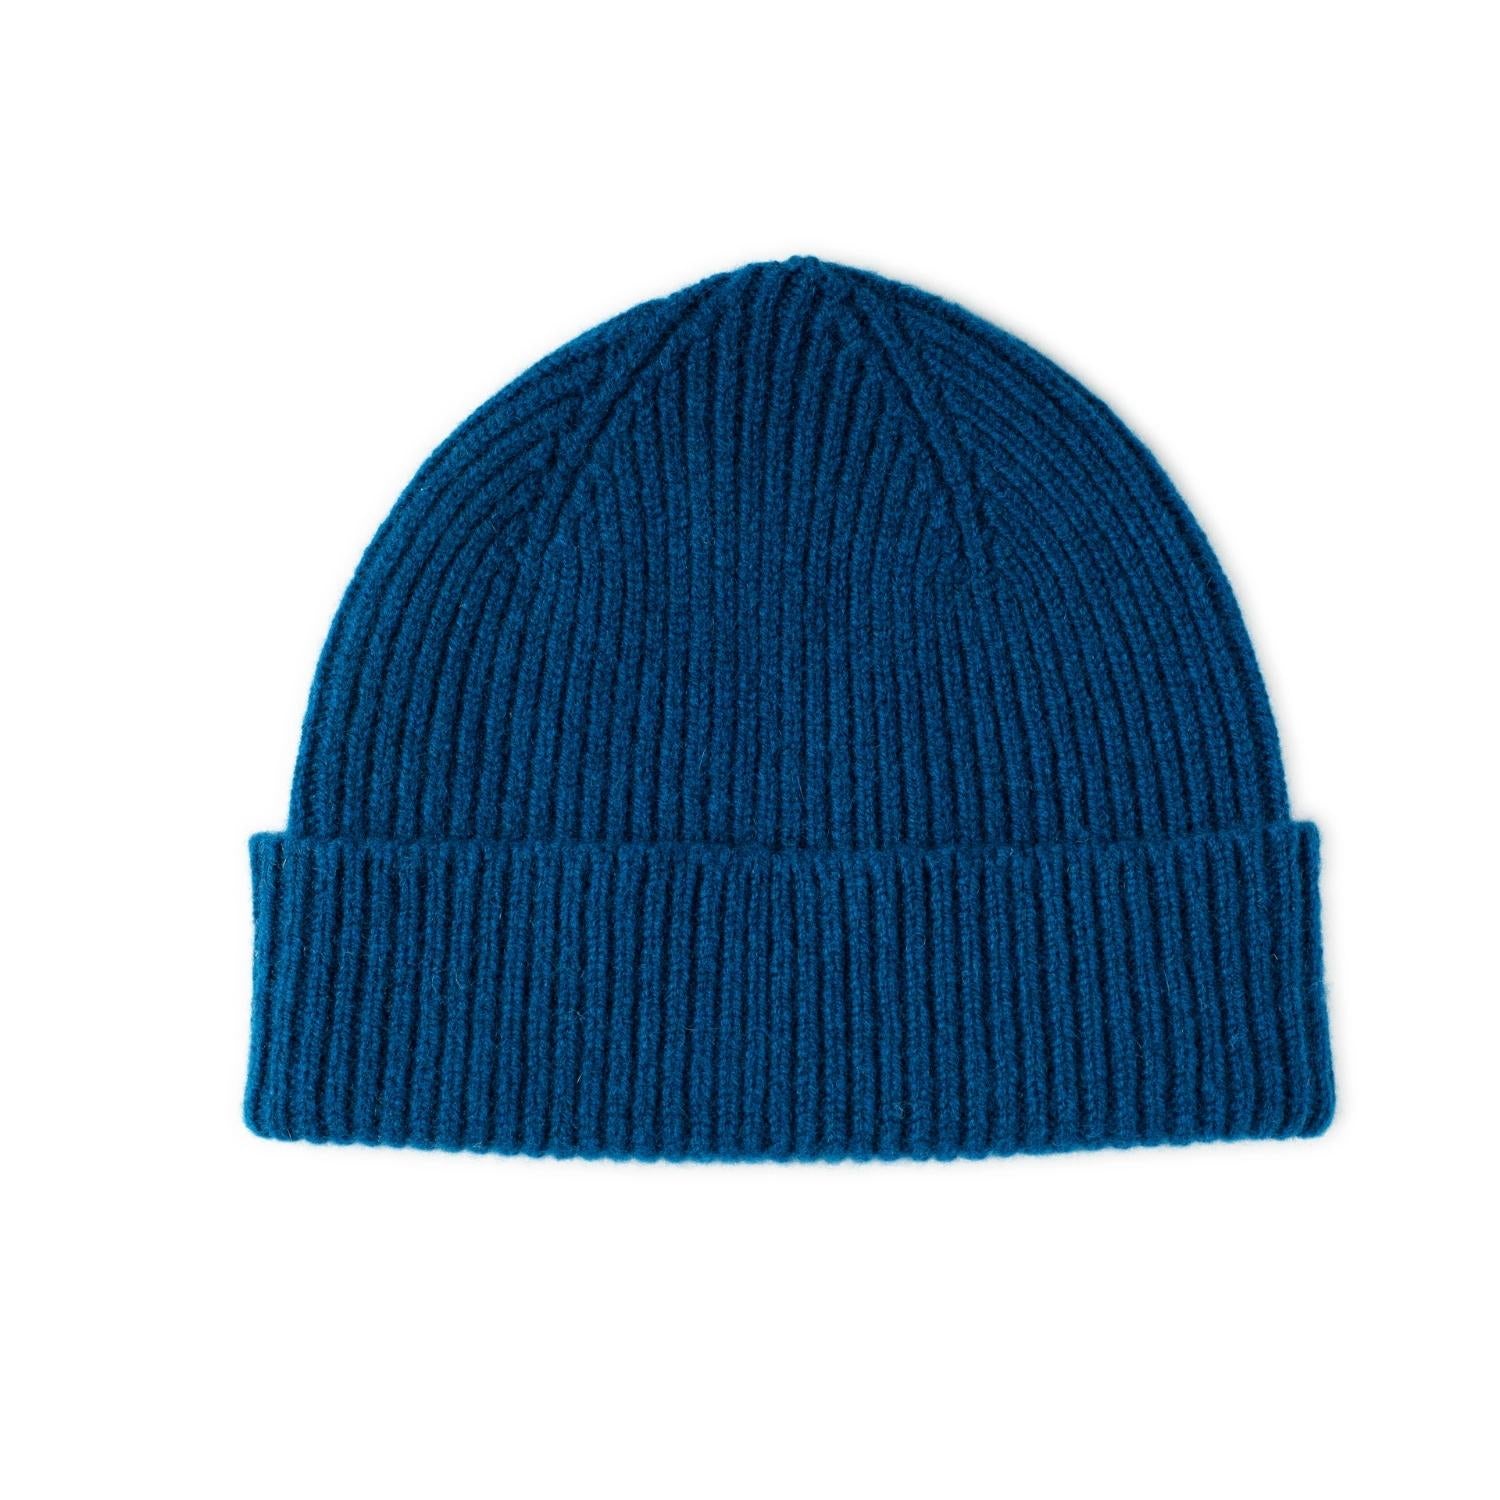 ocean blue  wool hat, ribbed